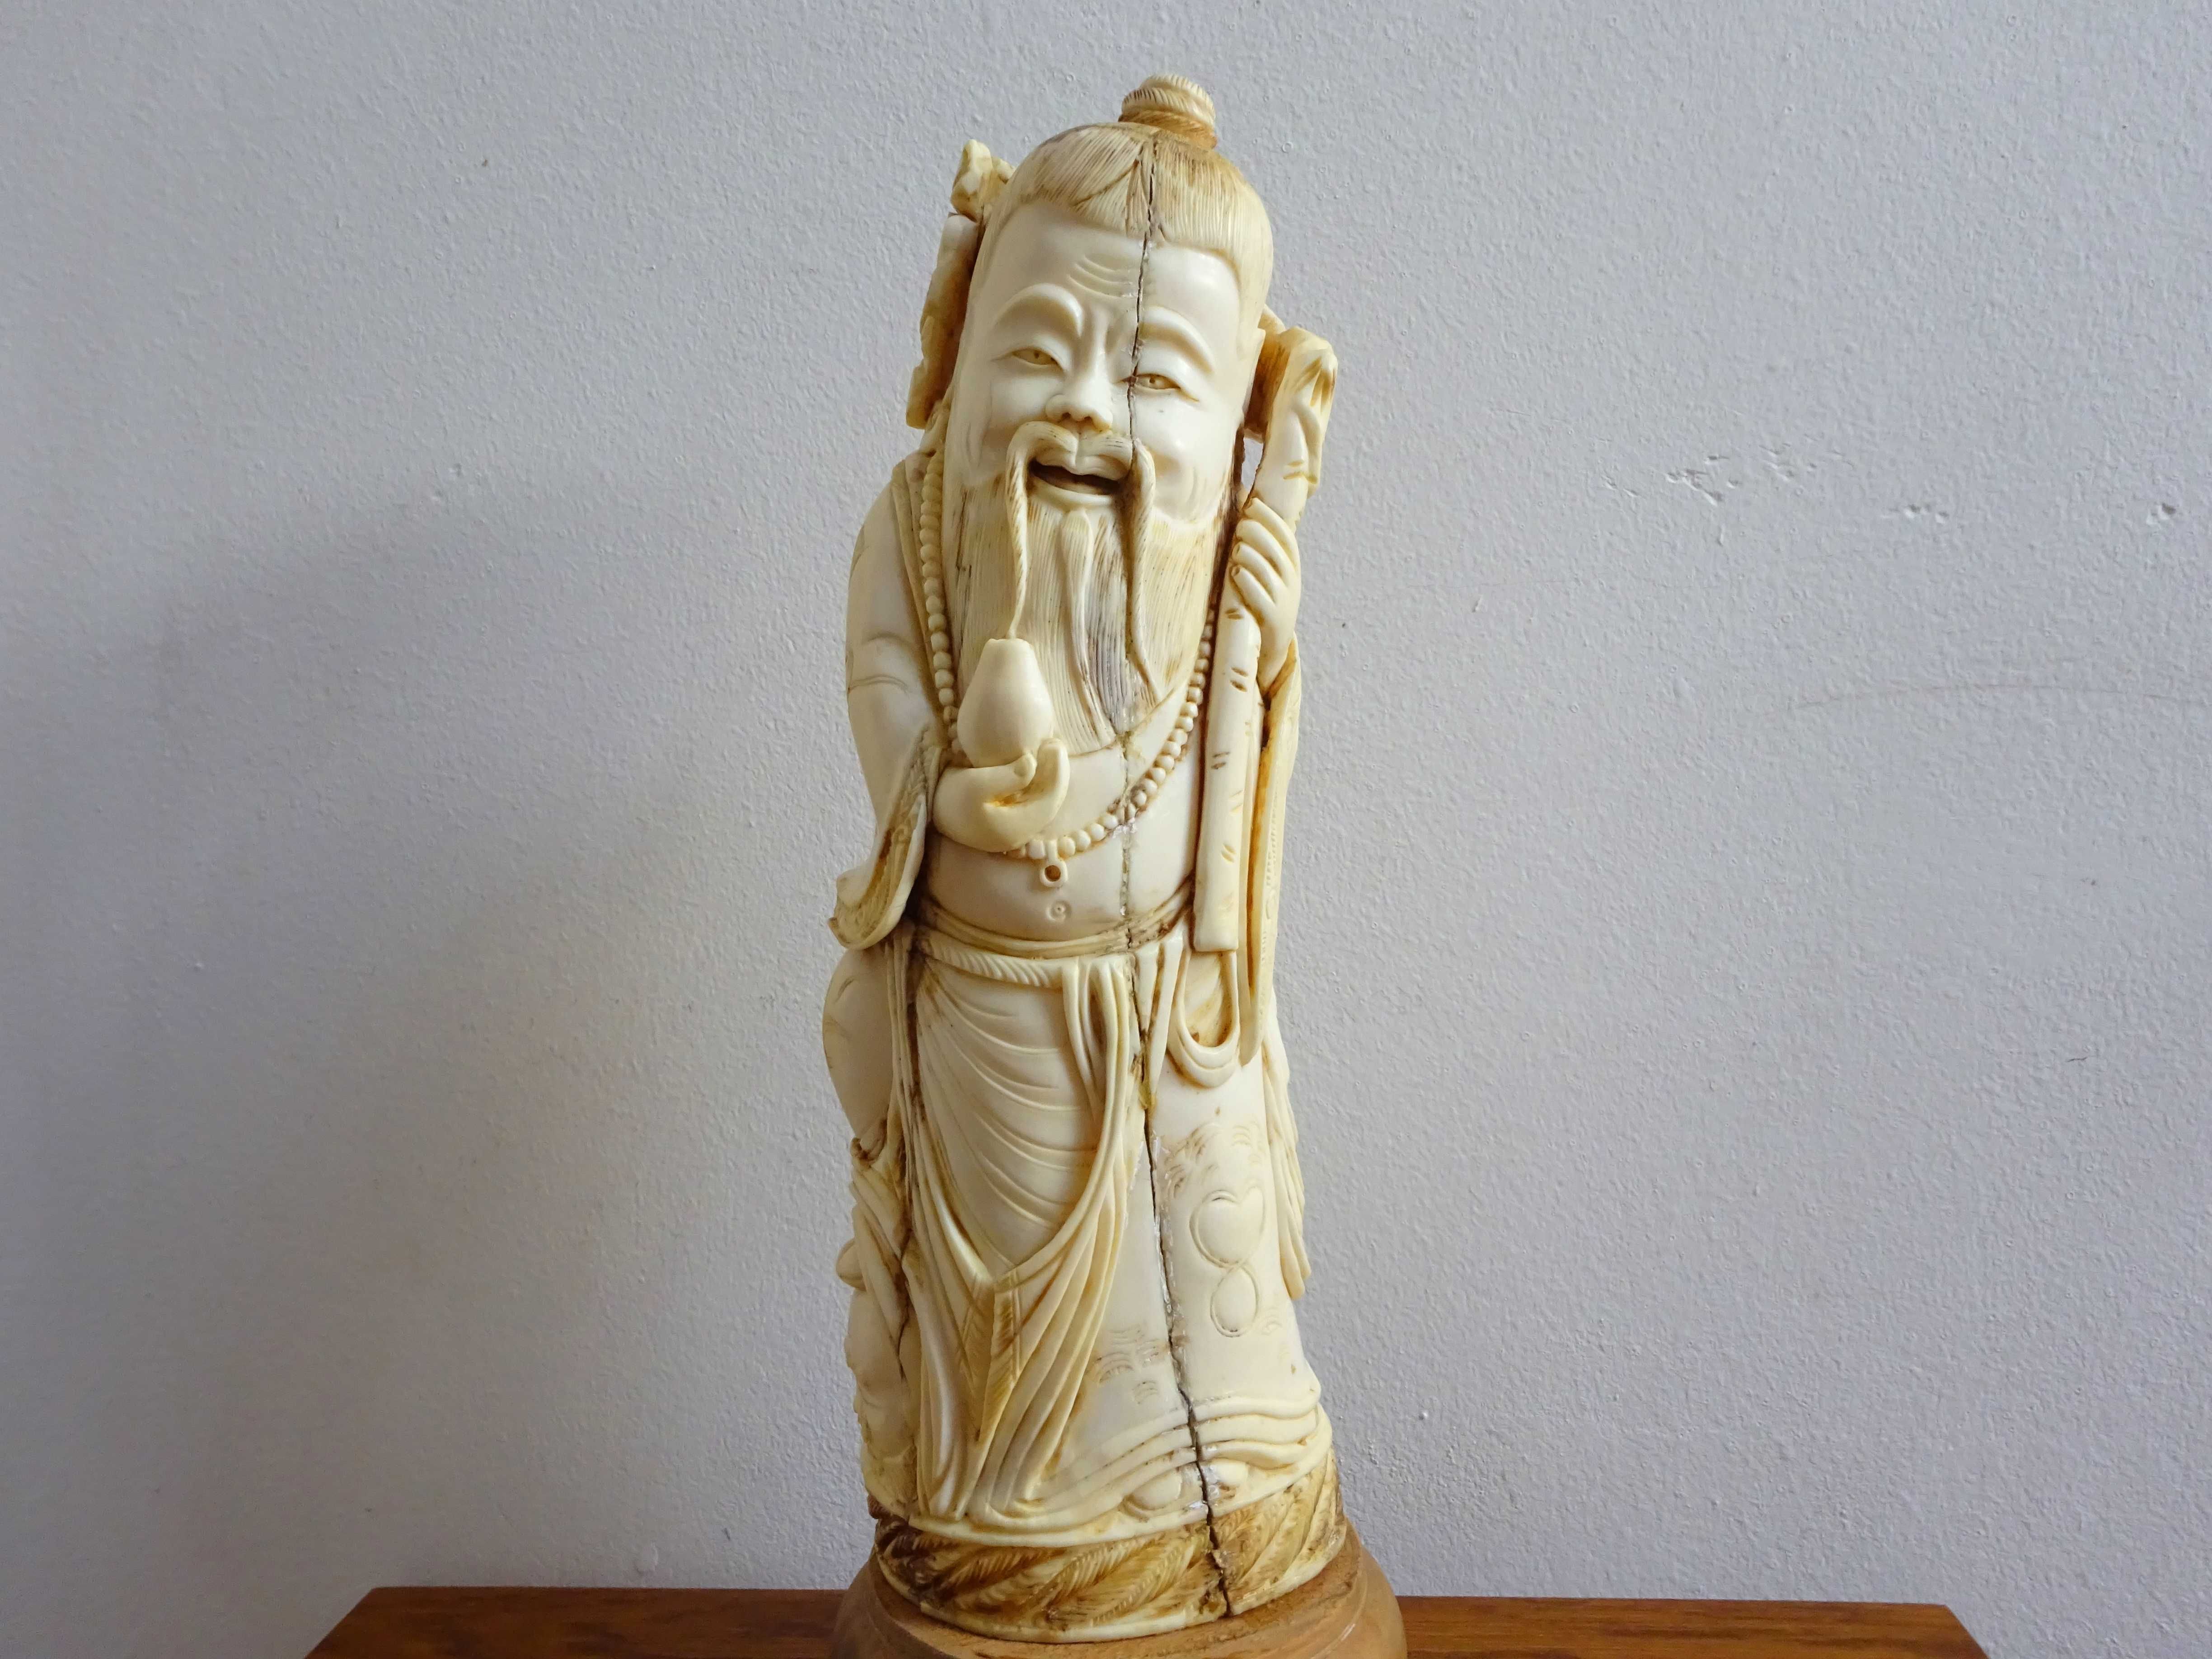 Statueta asiatica sculptata manual - Sculptura Veche si Rara